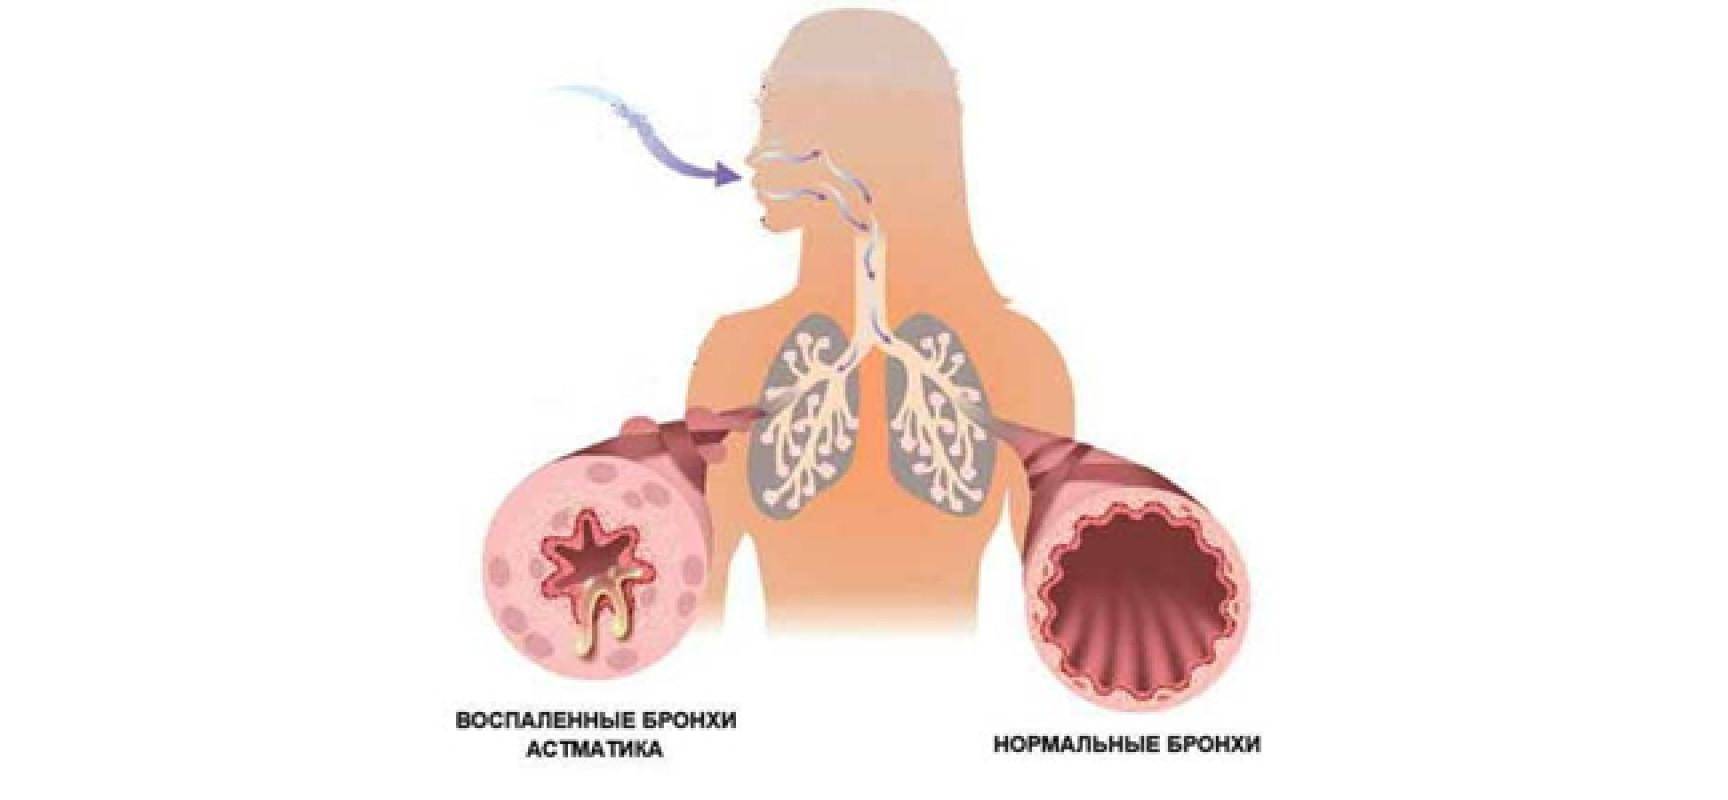 Код бронхиальной астмы по мкб 10: описание и особенности